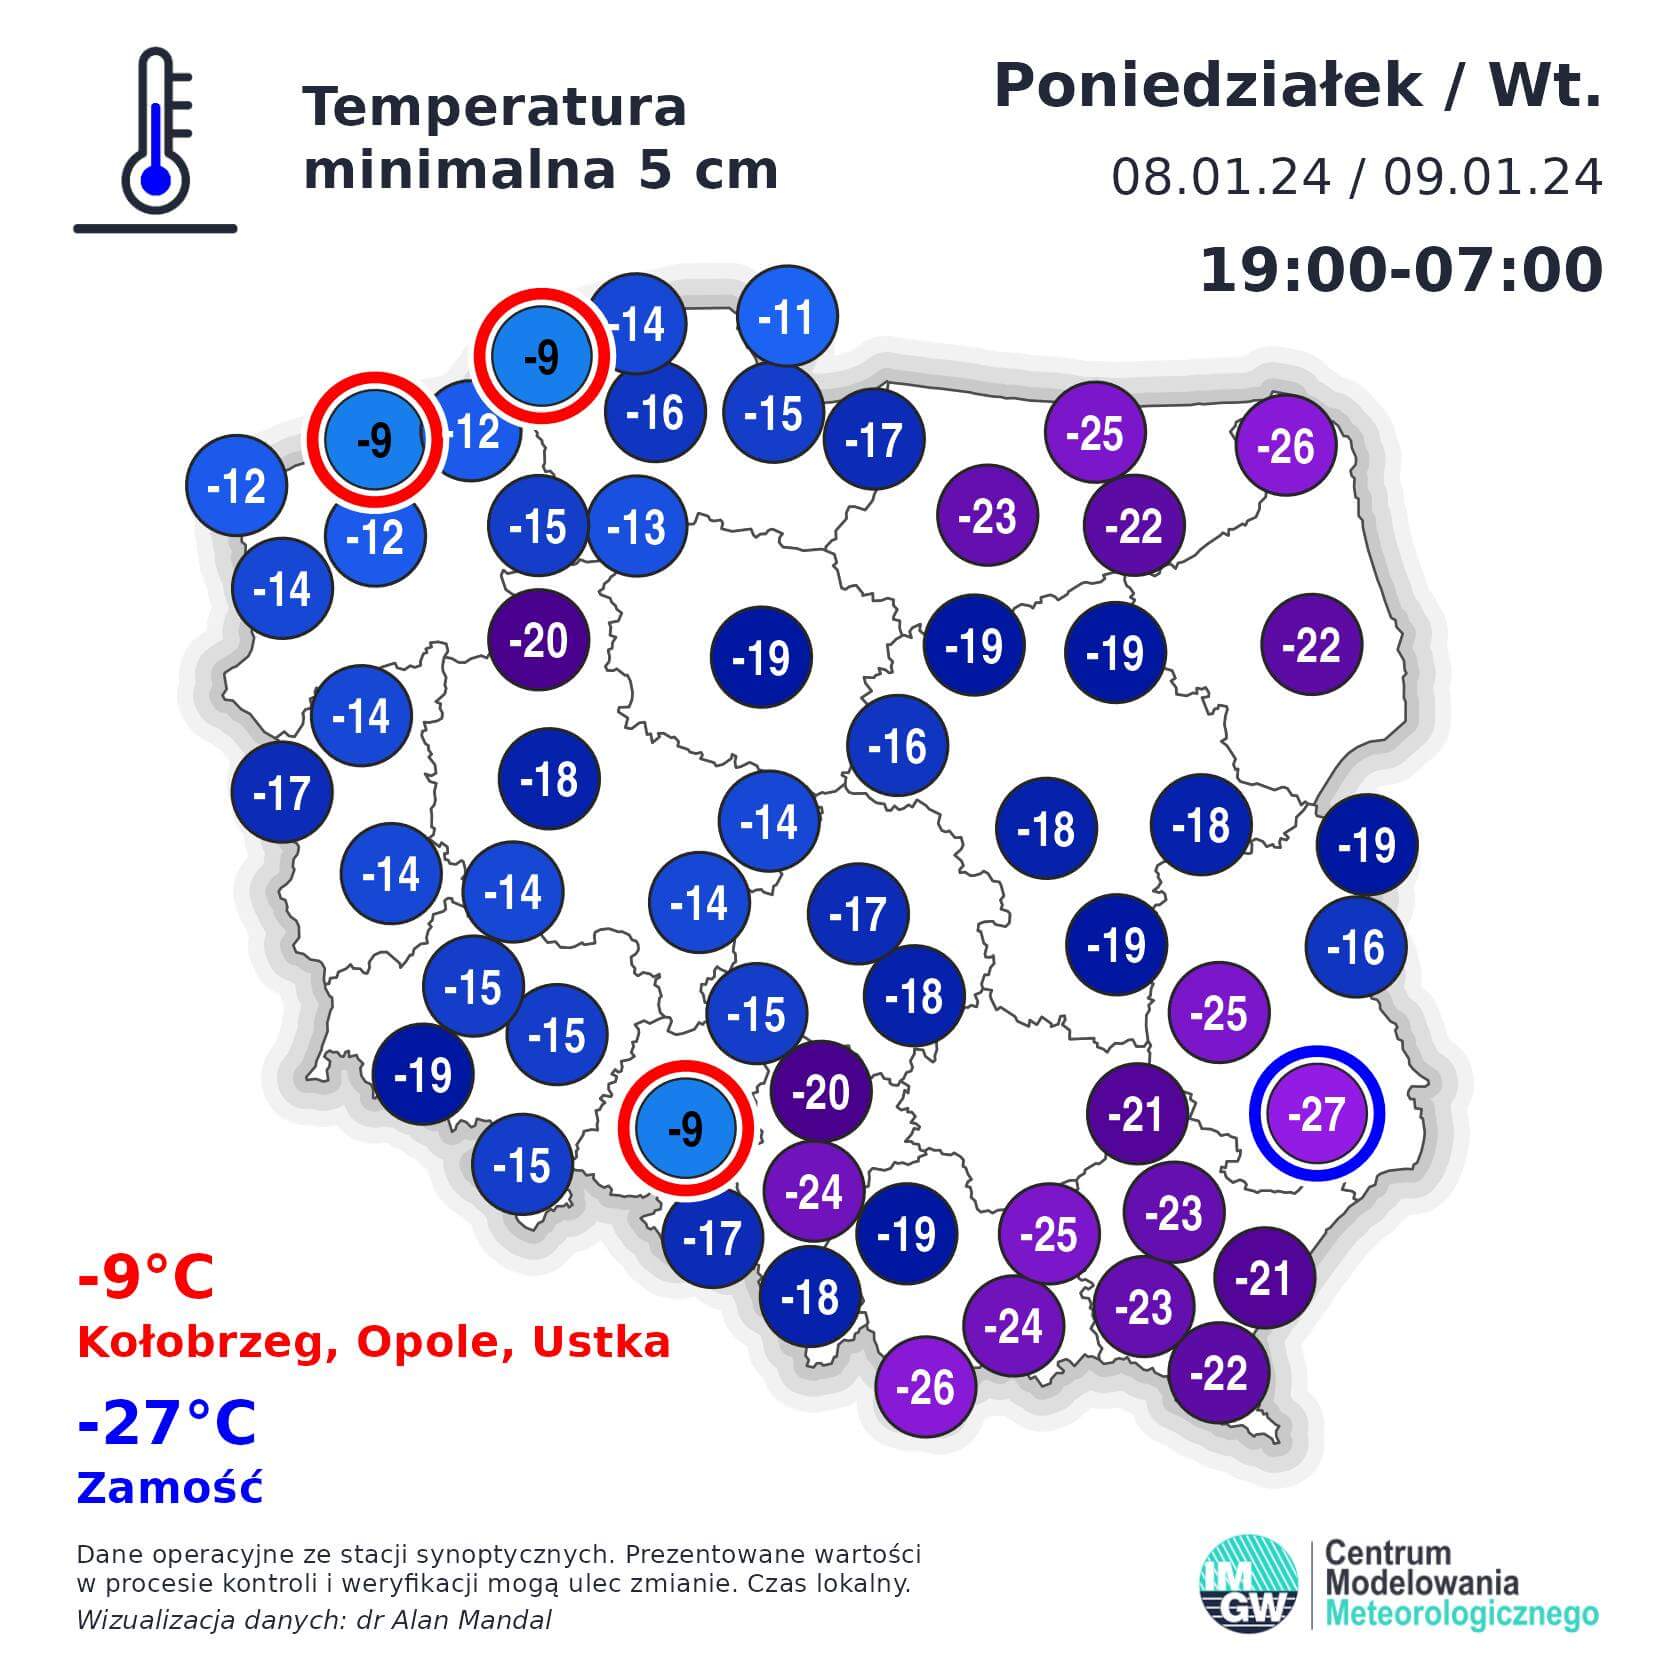 Temperatura minimalna przy gruncie w nocy z poniedziałku na wtorek 8-9 stycznia 2024 r. w Polsce